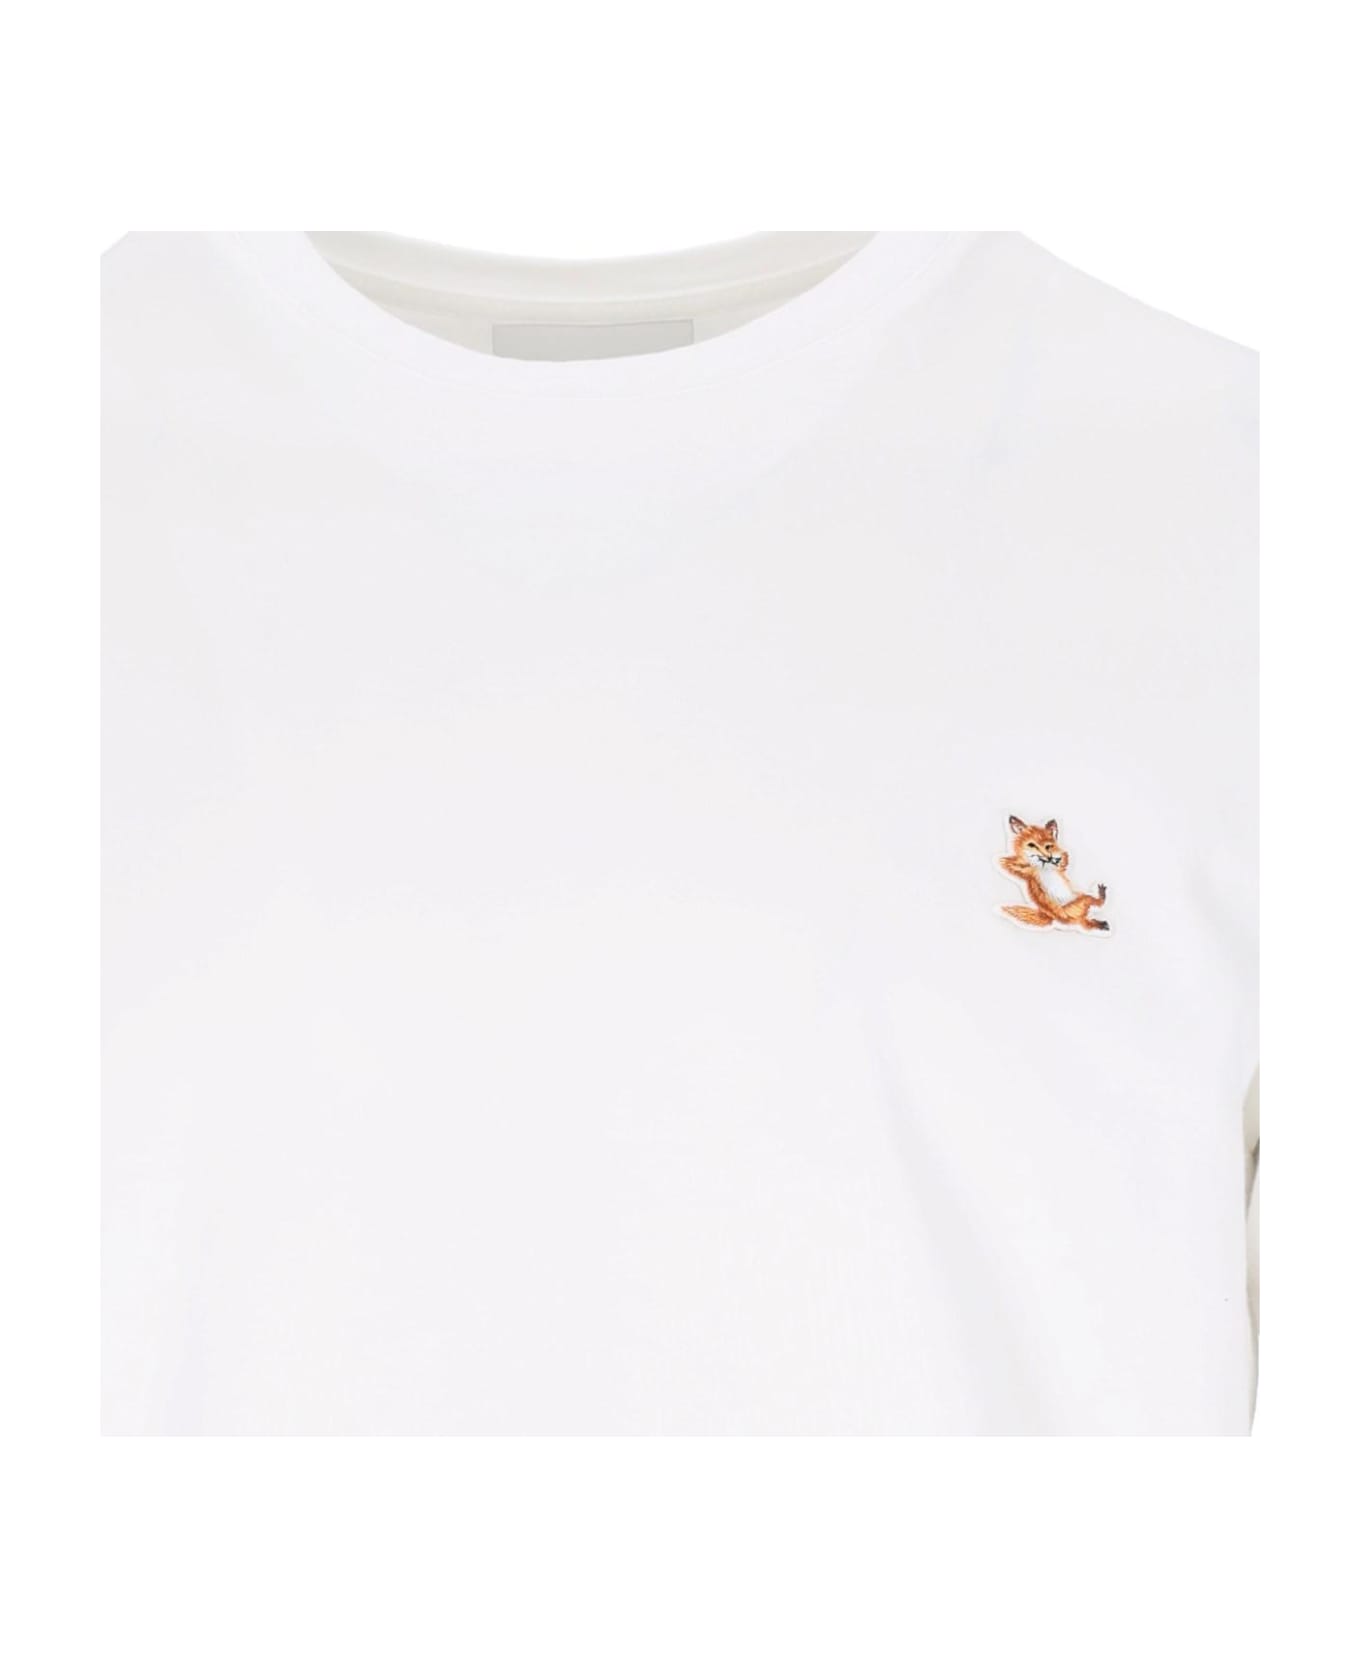 Maison Kitsuné 'chillax Fox' T-shirt - White